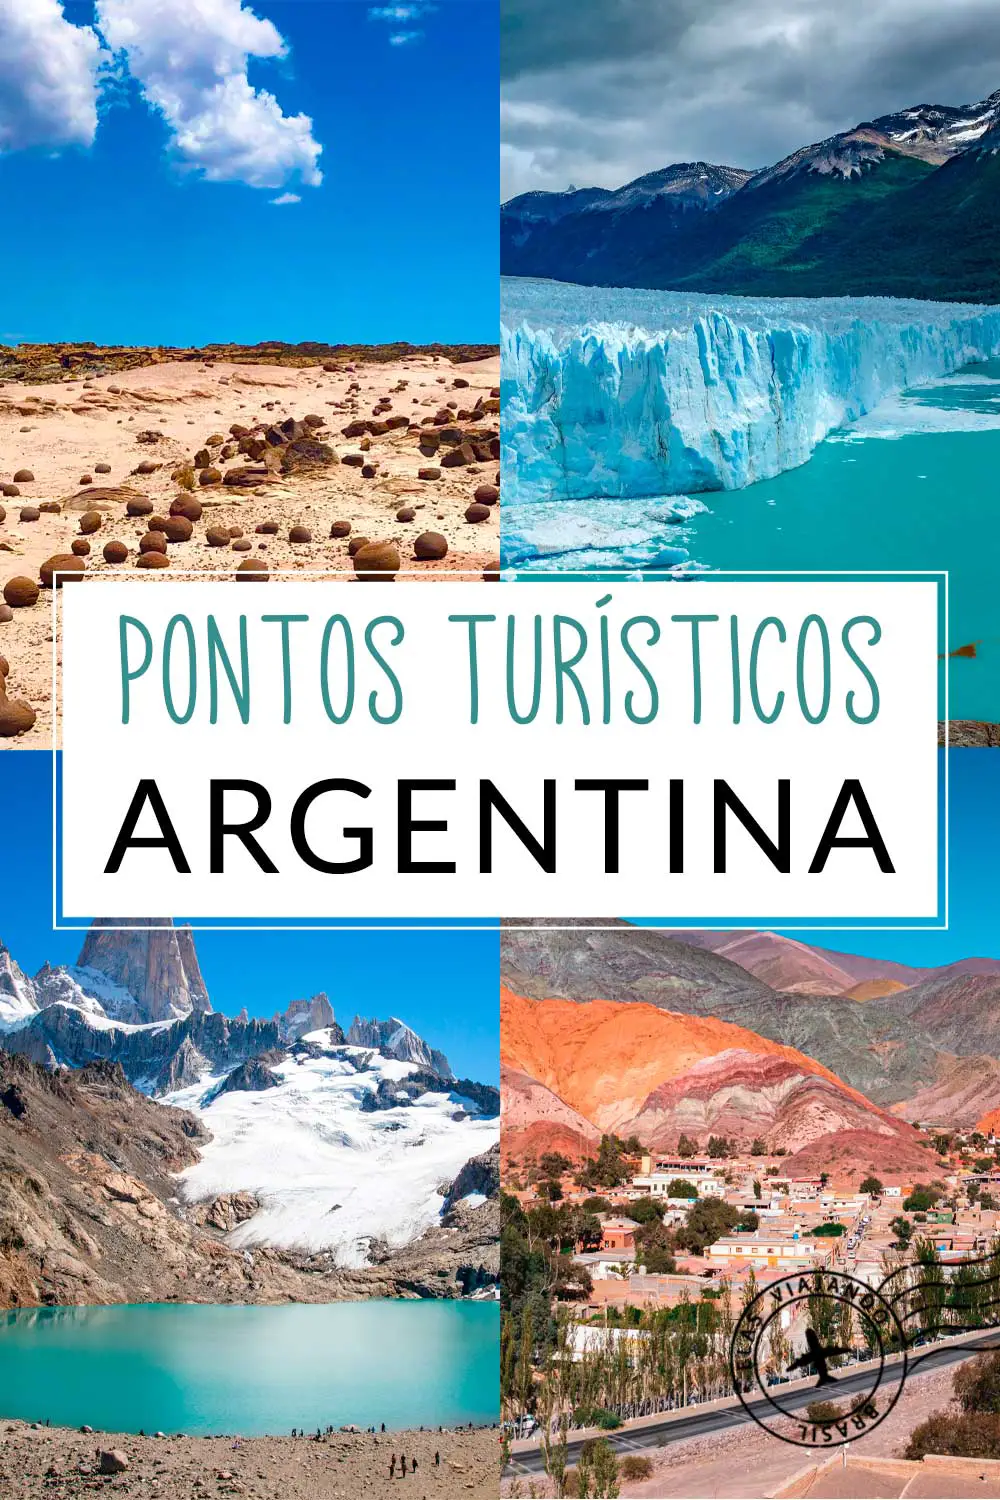 Pontos turisticos da Argentina